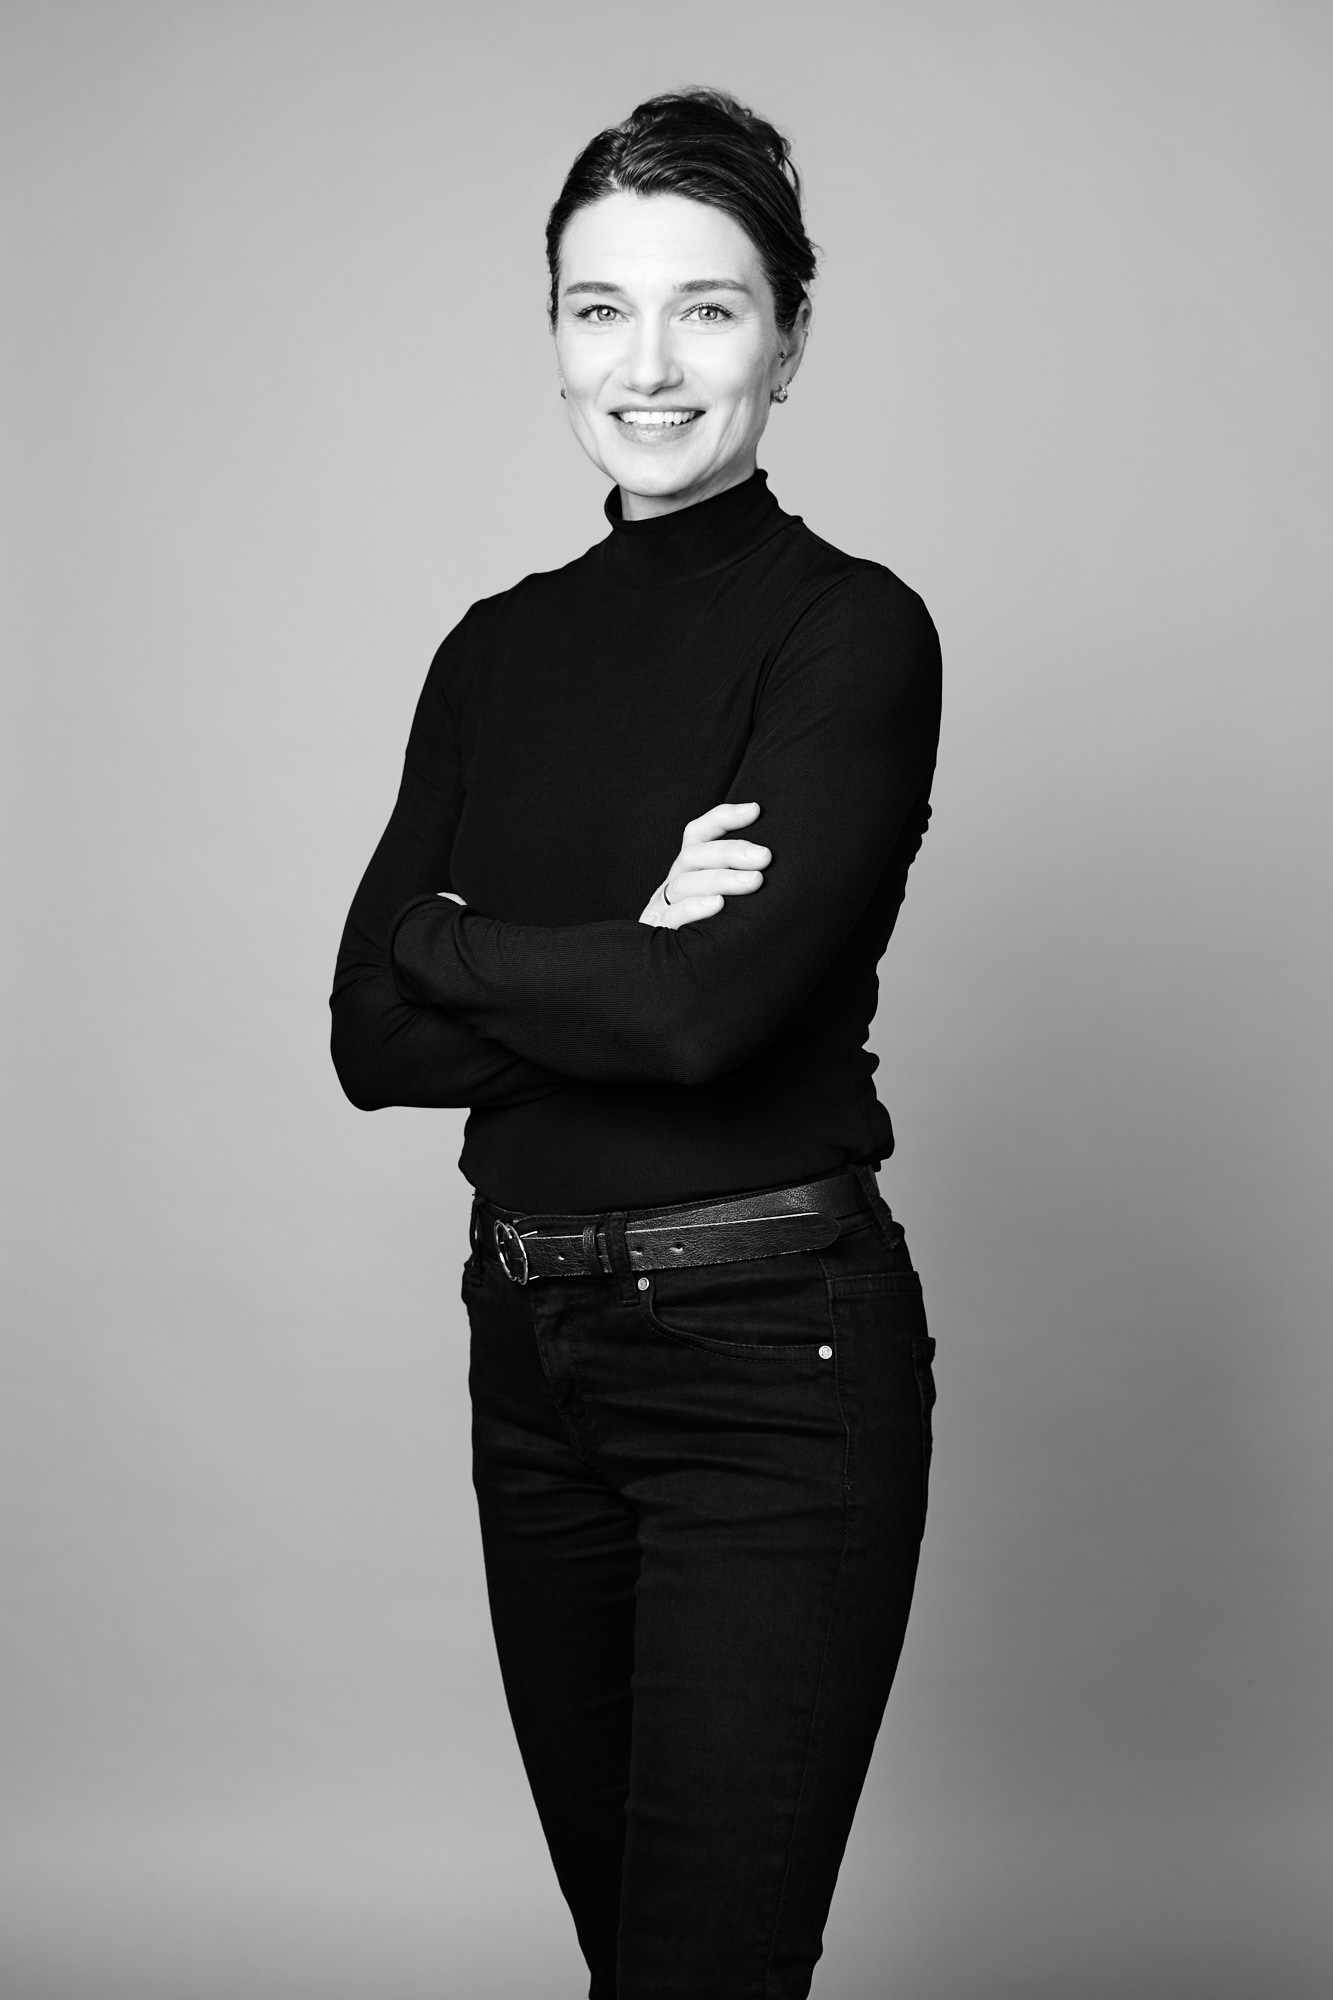 Businessfoto und Portraits der Businessfrau, Journalistin Manuela Bock, fotografiert von Rayk Weber, Fotograf aus Magdeburg